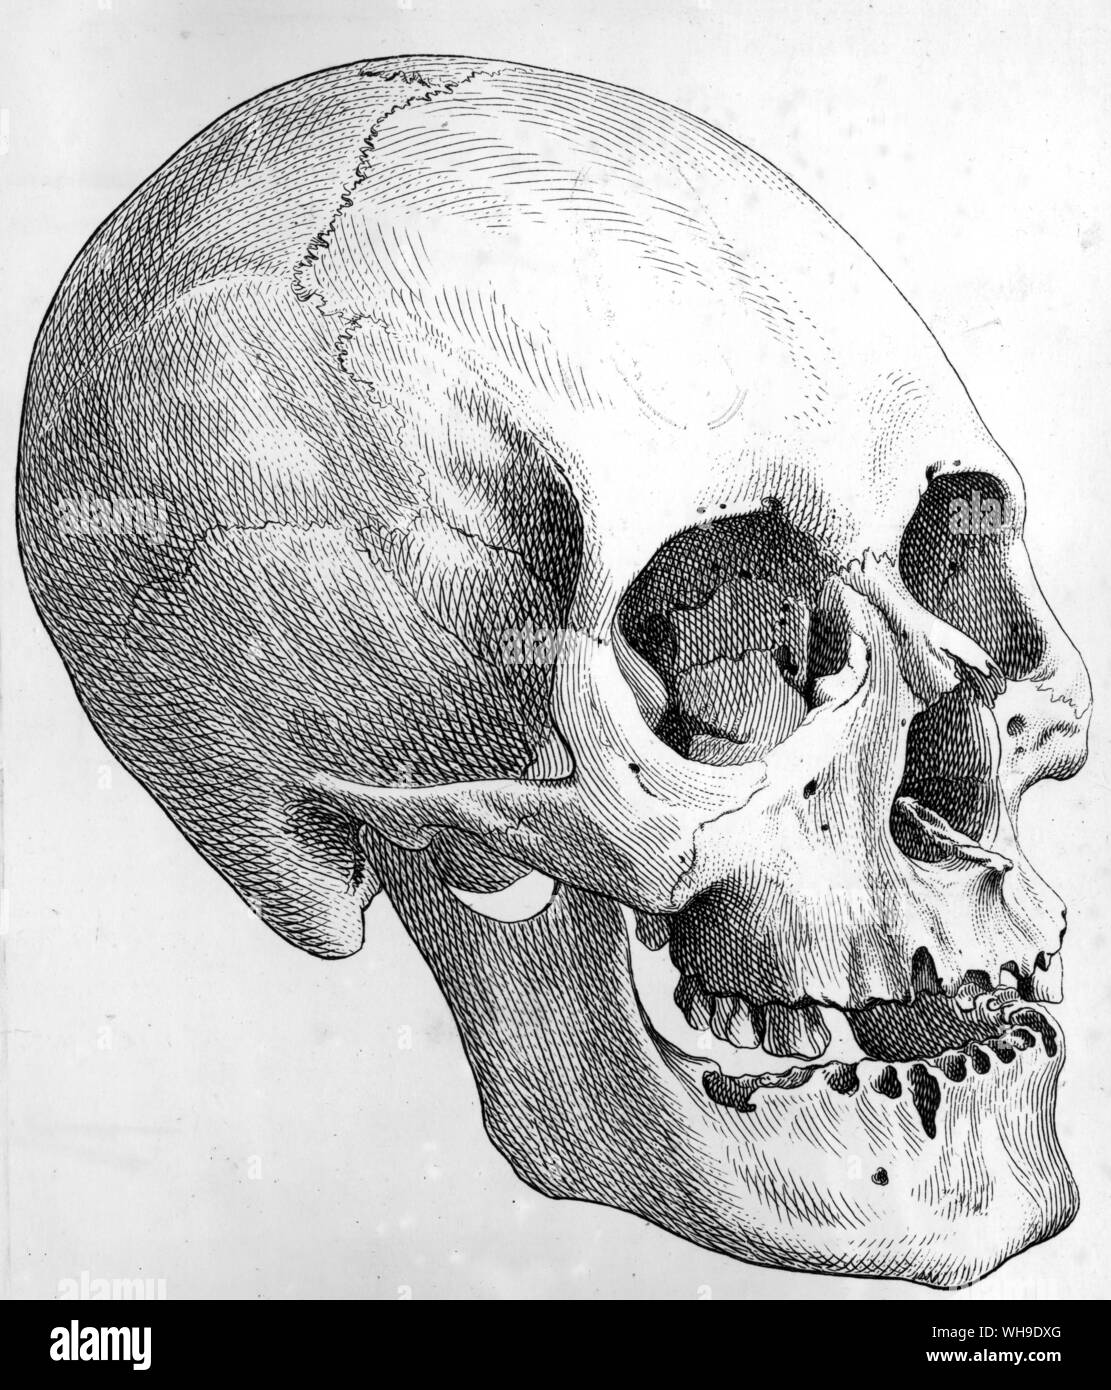 Schädel eines ausgestorbenen Atures indischen. Humboldt nahm den Schädel von der Beerdigung Höhle von Ataruipe und später J. F. Blumenbach gemacht diese Gravur für seine Pionierarbeit auf Menschliche körperliche Typen Stockfoto